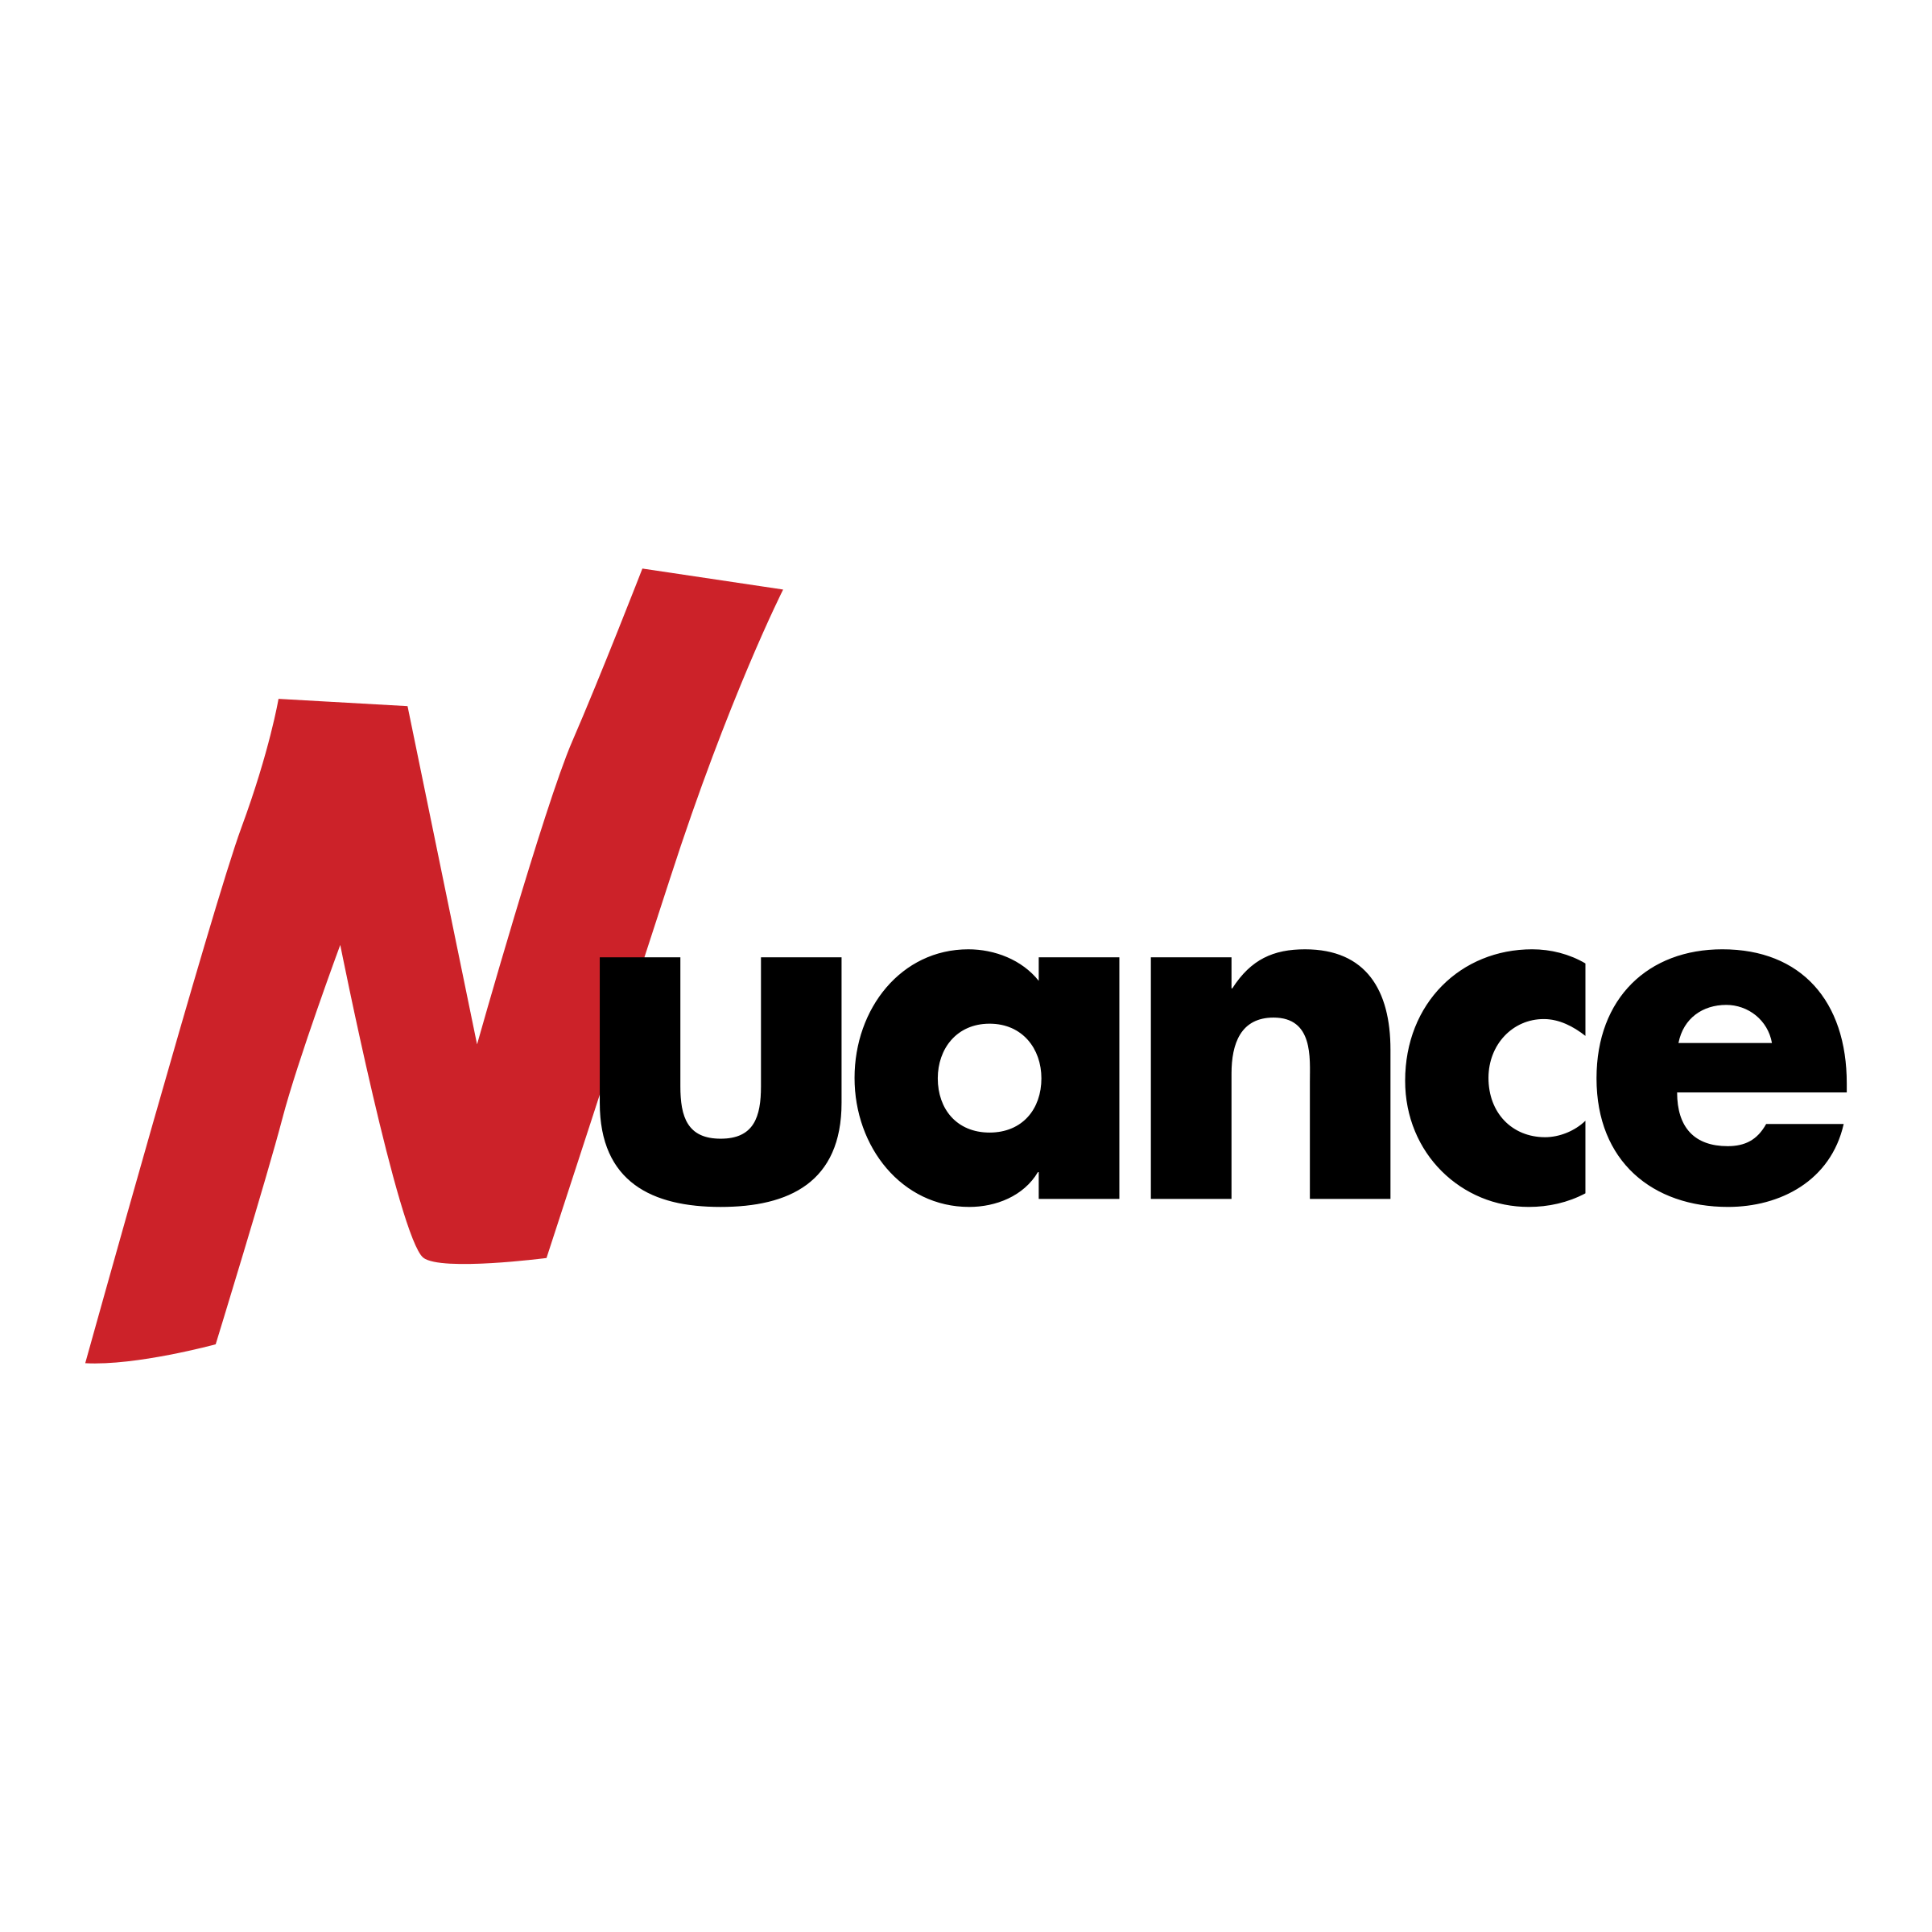 Nuance Logo - Nuance Logo PNG Transparent & SVG Vector - Freebie Supply